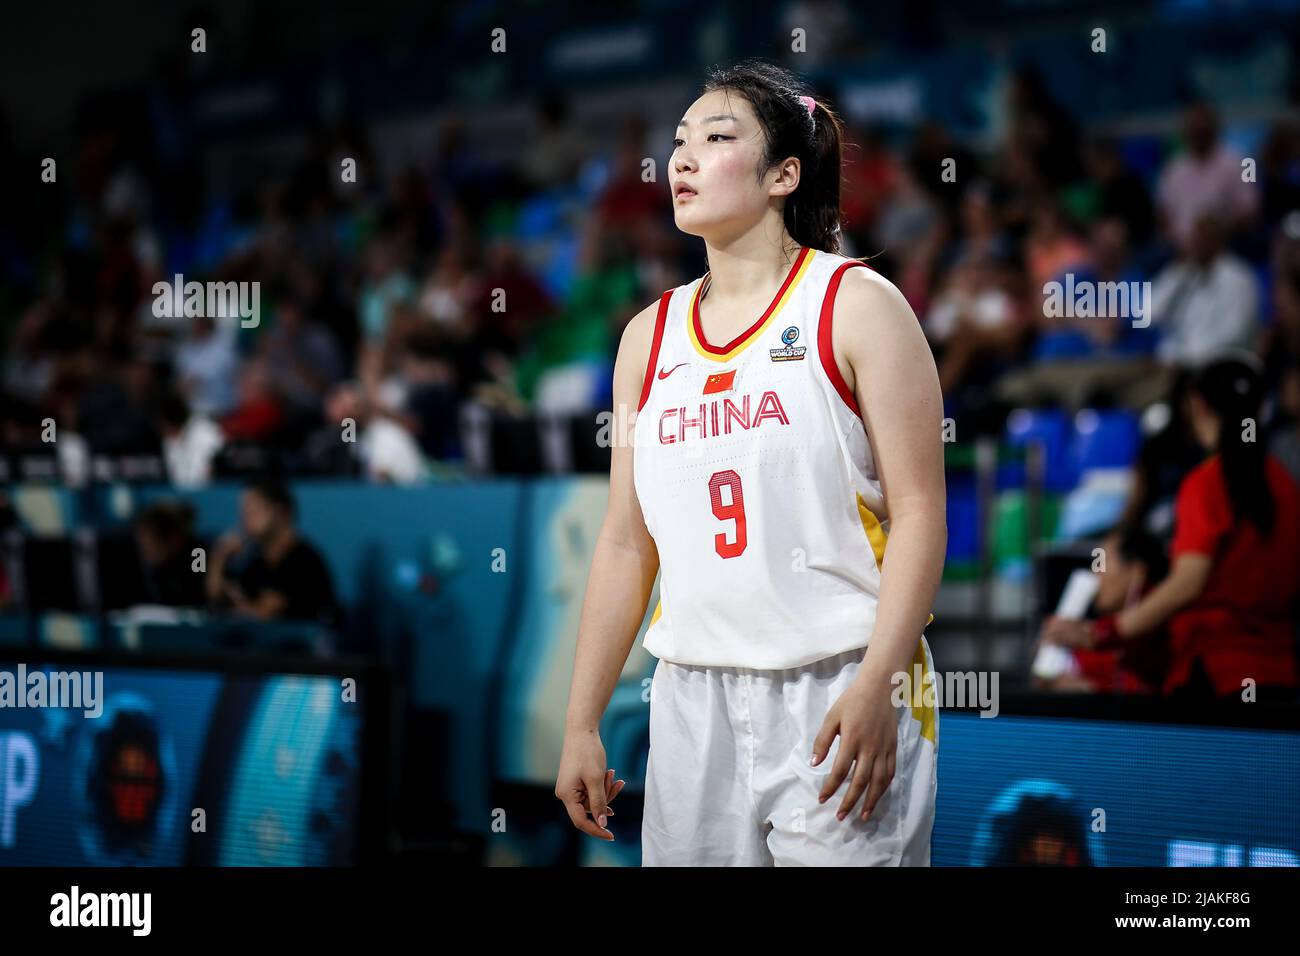 Espagne, Ténérife, 26 septembre 2018: Joueur de basket-ball féminin chinois Li Meng pendant la coupe du monde de basket-ball féminin en Espagne. Banque D'Images